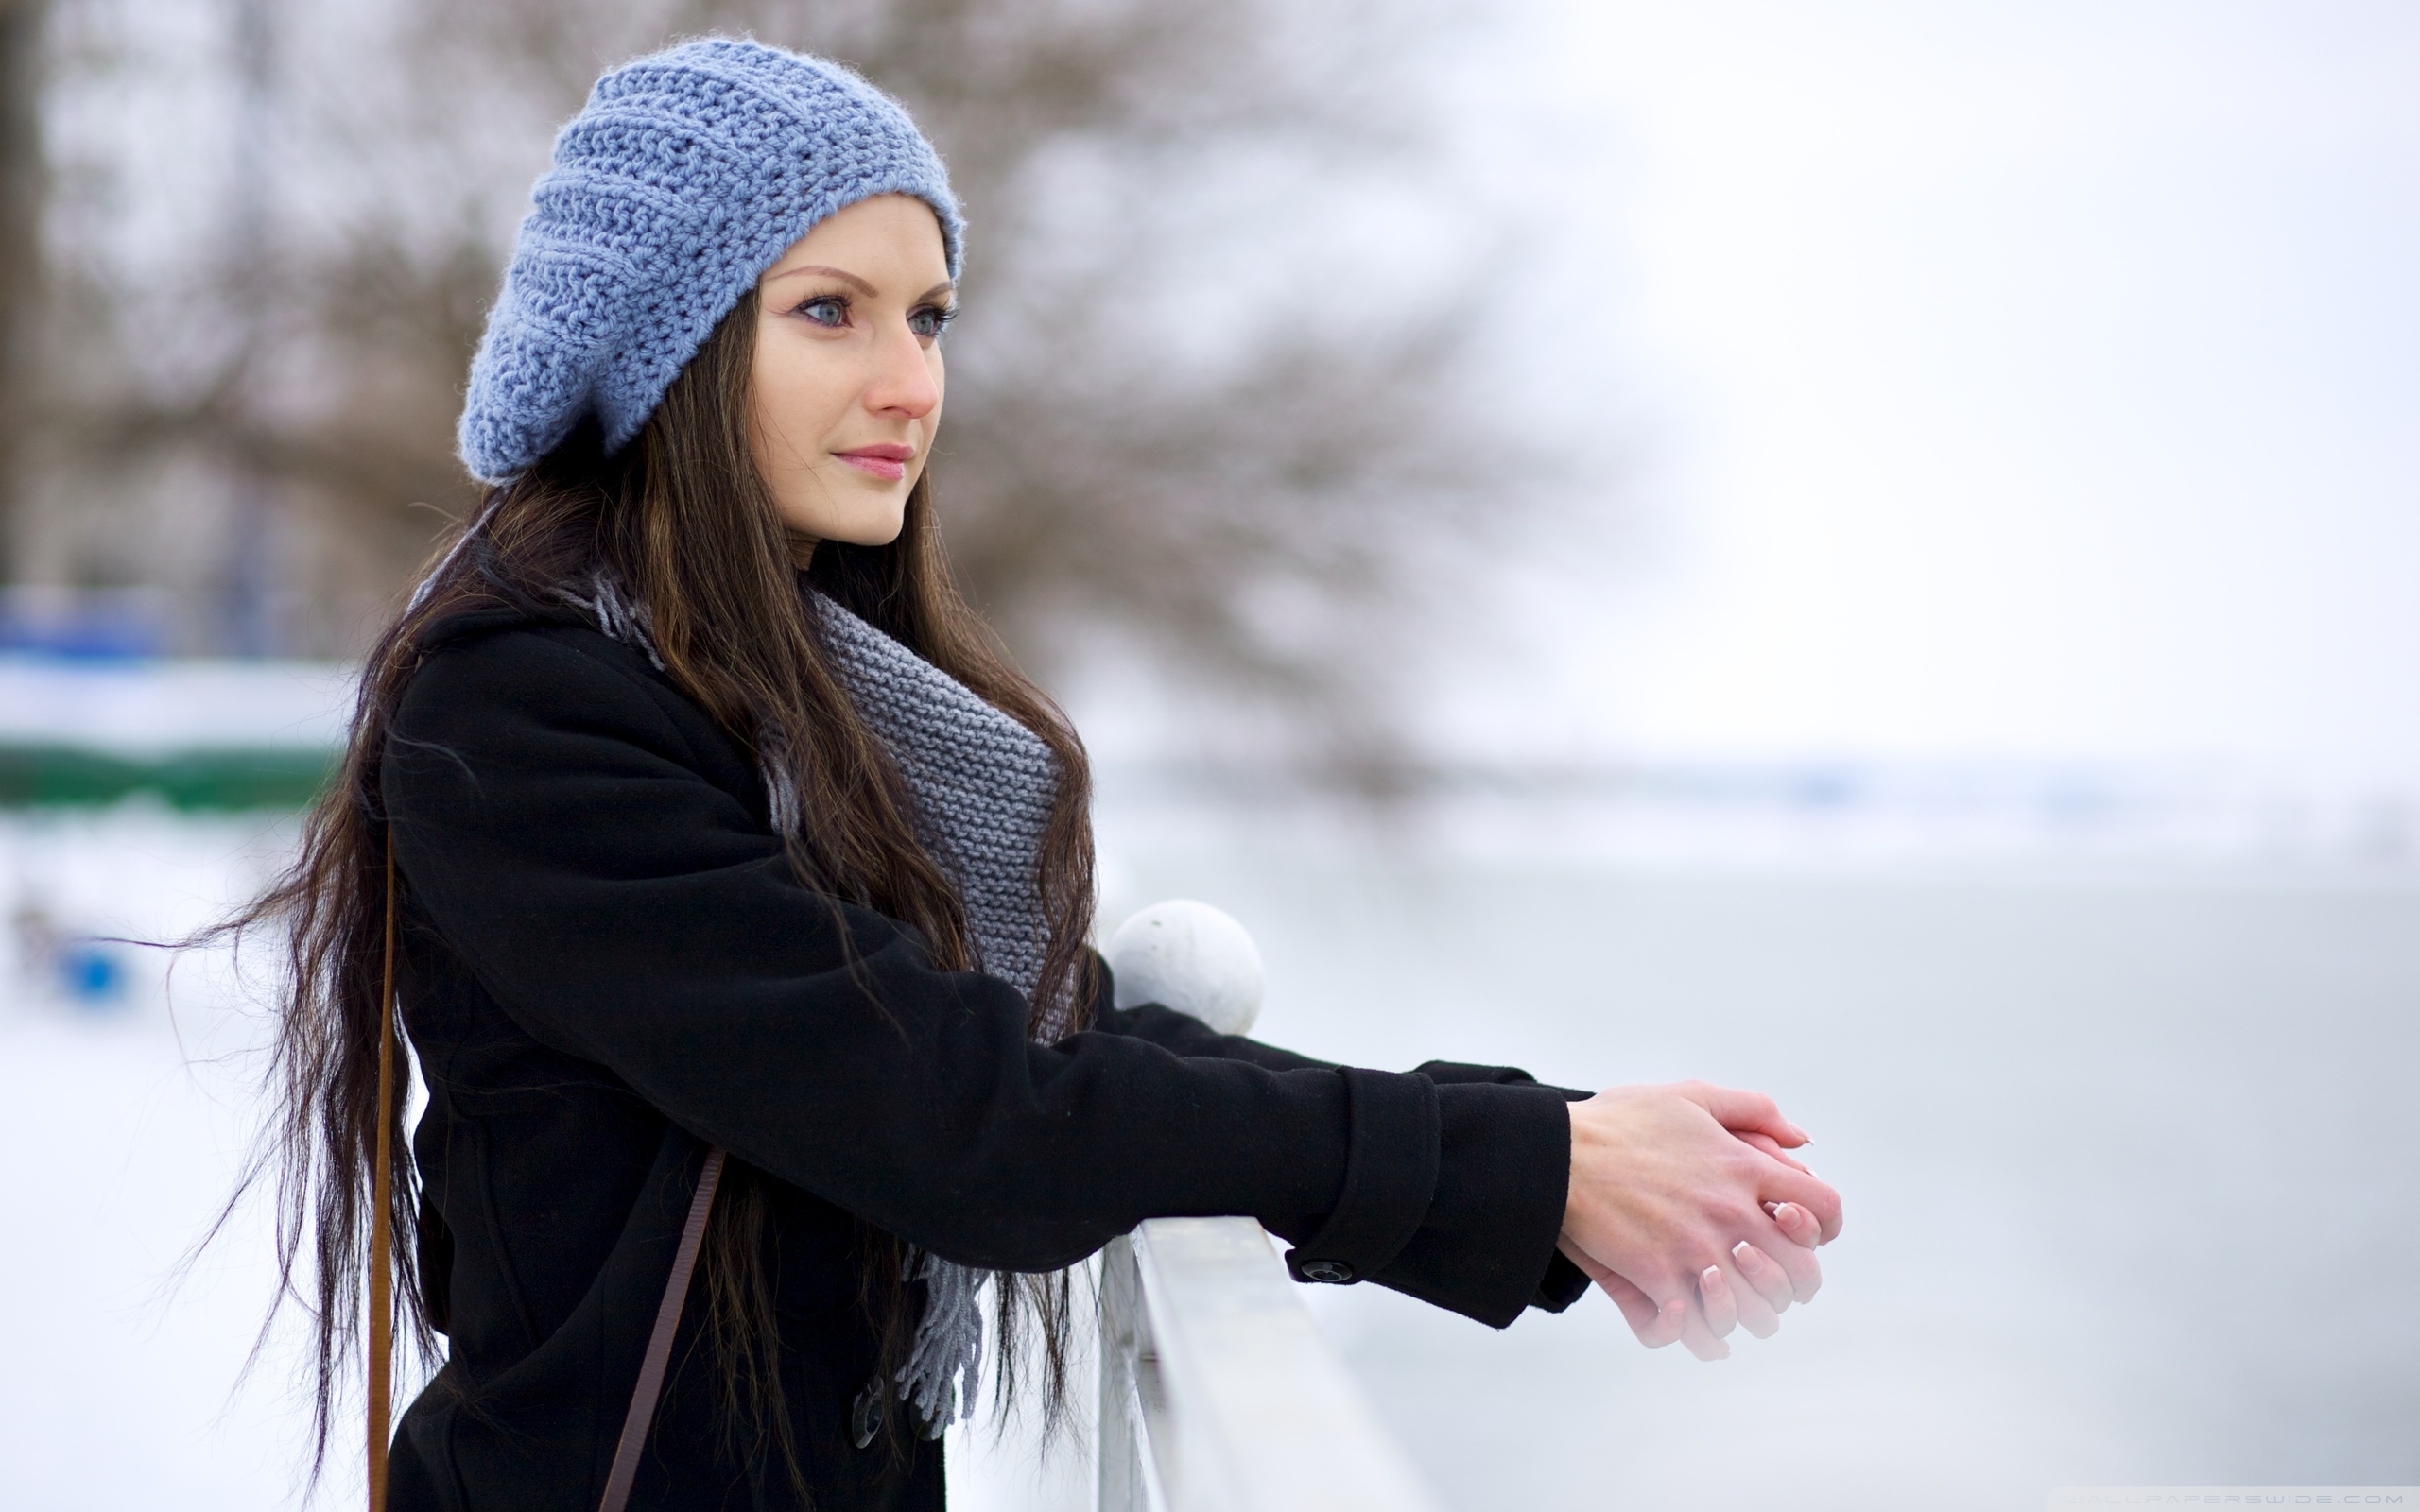 Girl in winter photo